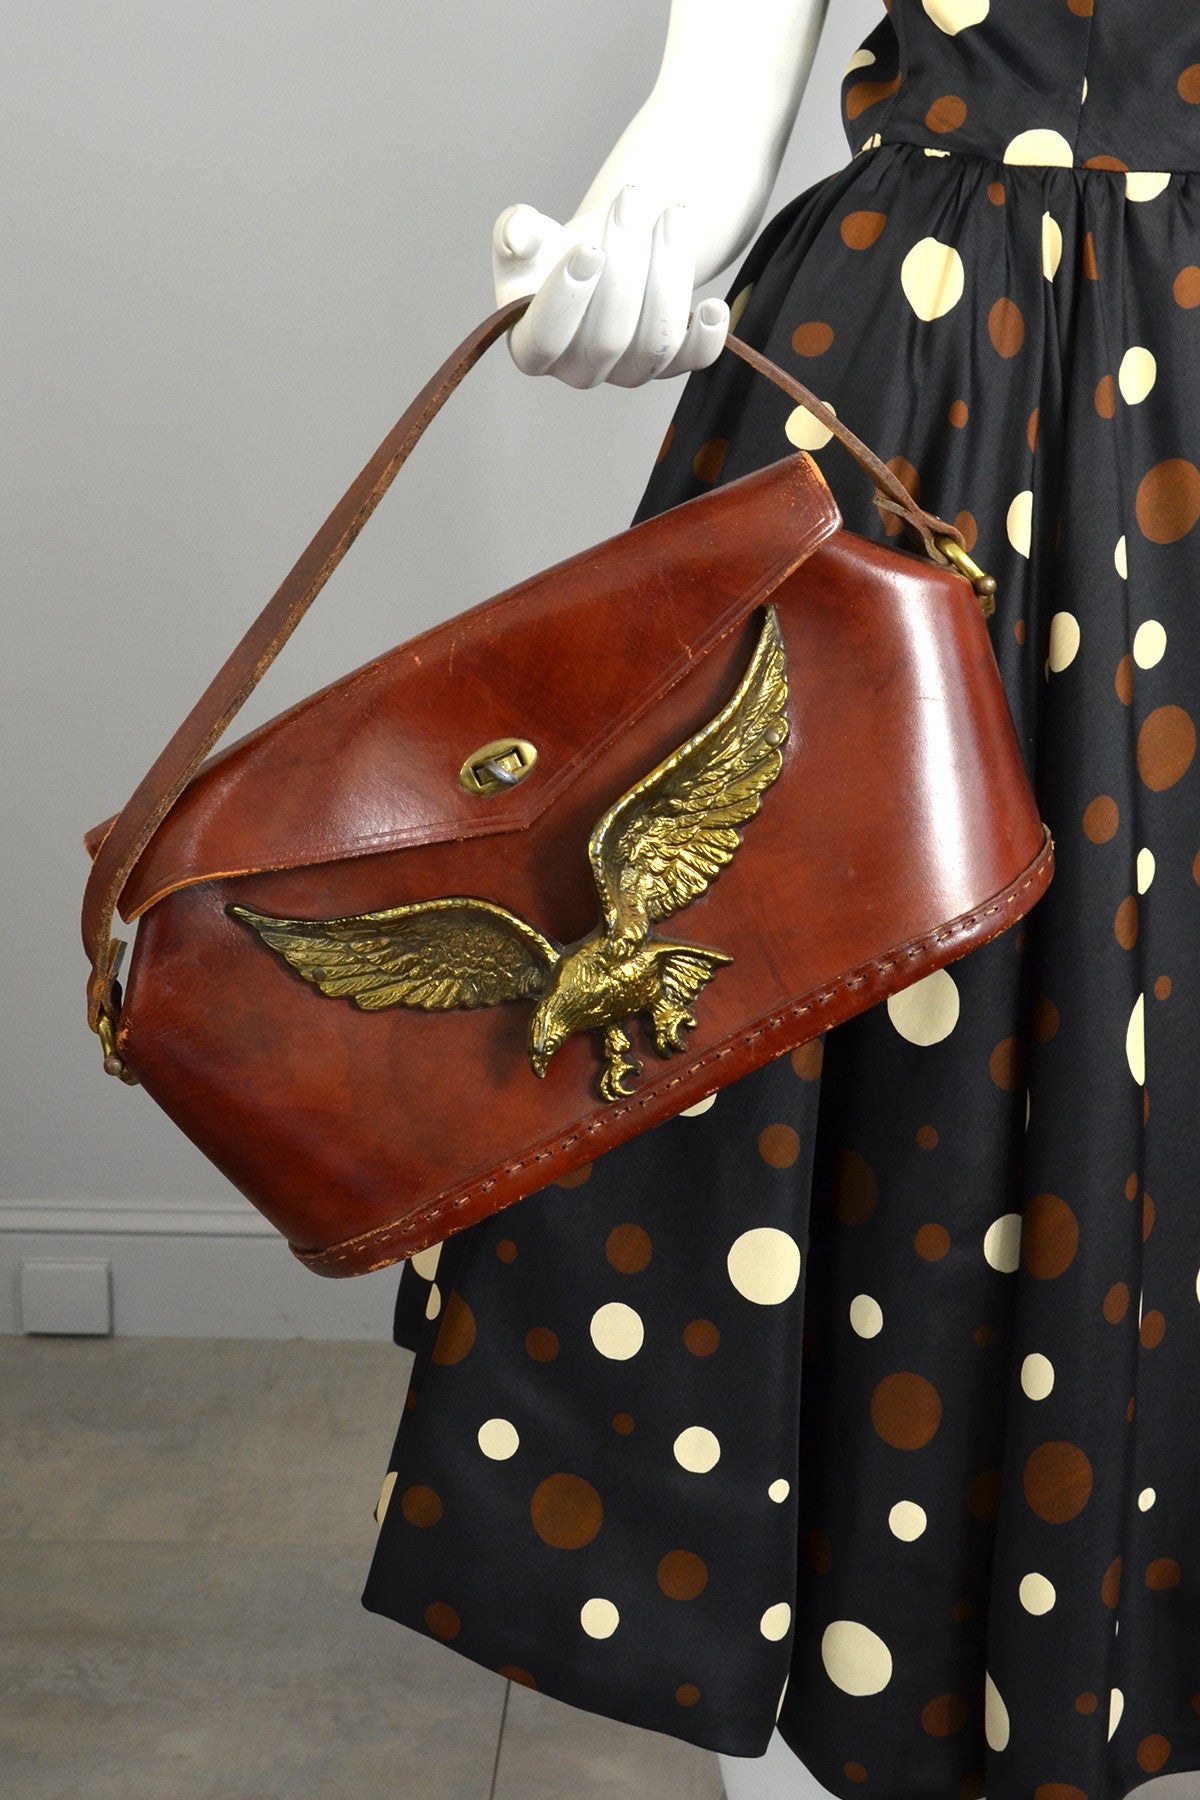 Vintage Cognac Brown Leather Ladies Purse Bag Arcier Match 